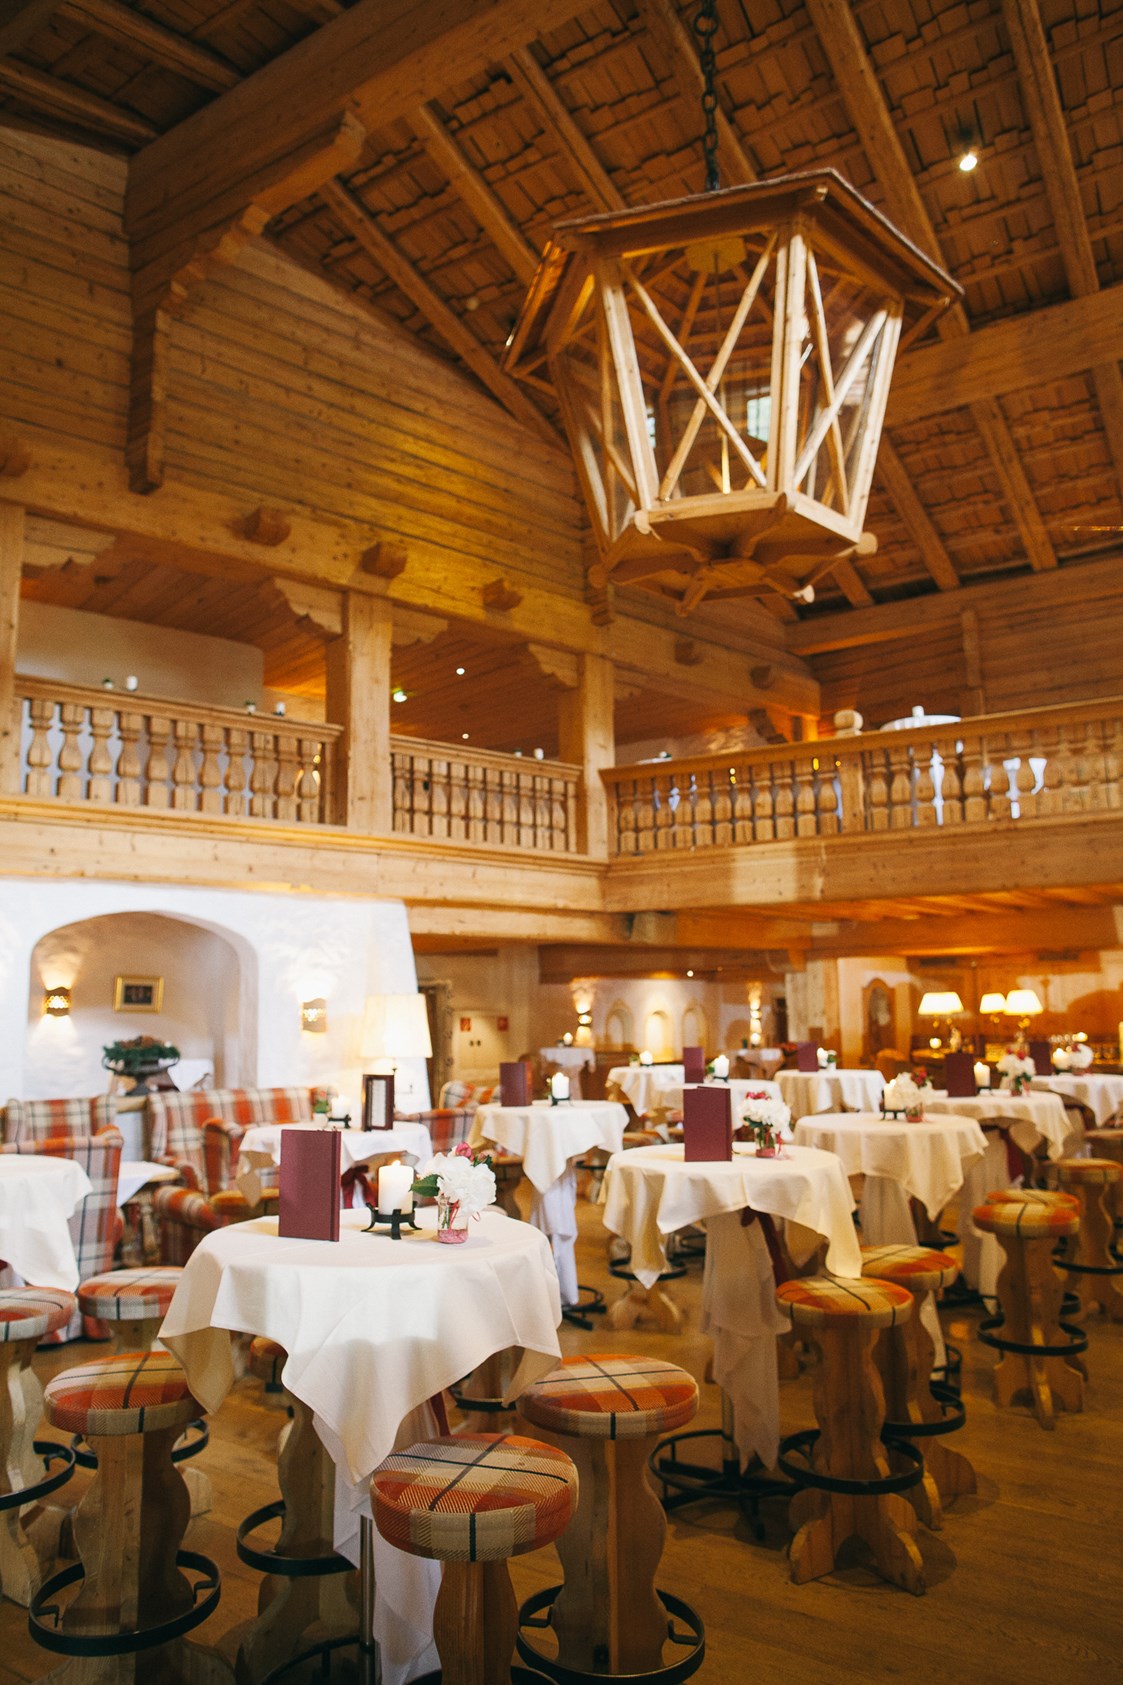 Hochzeitslocation: Hotelbar "auf der Tenne" im Bio-Hotel Stanglwirt in Tirol.
Foto © formafoto.net - Bio-Hotel Stanglwirt